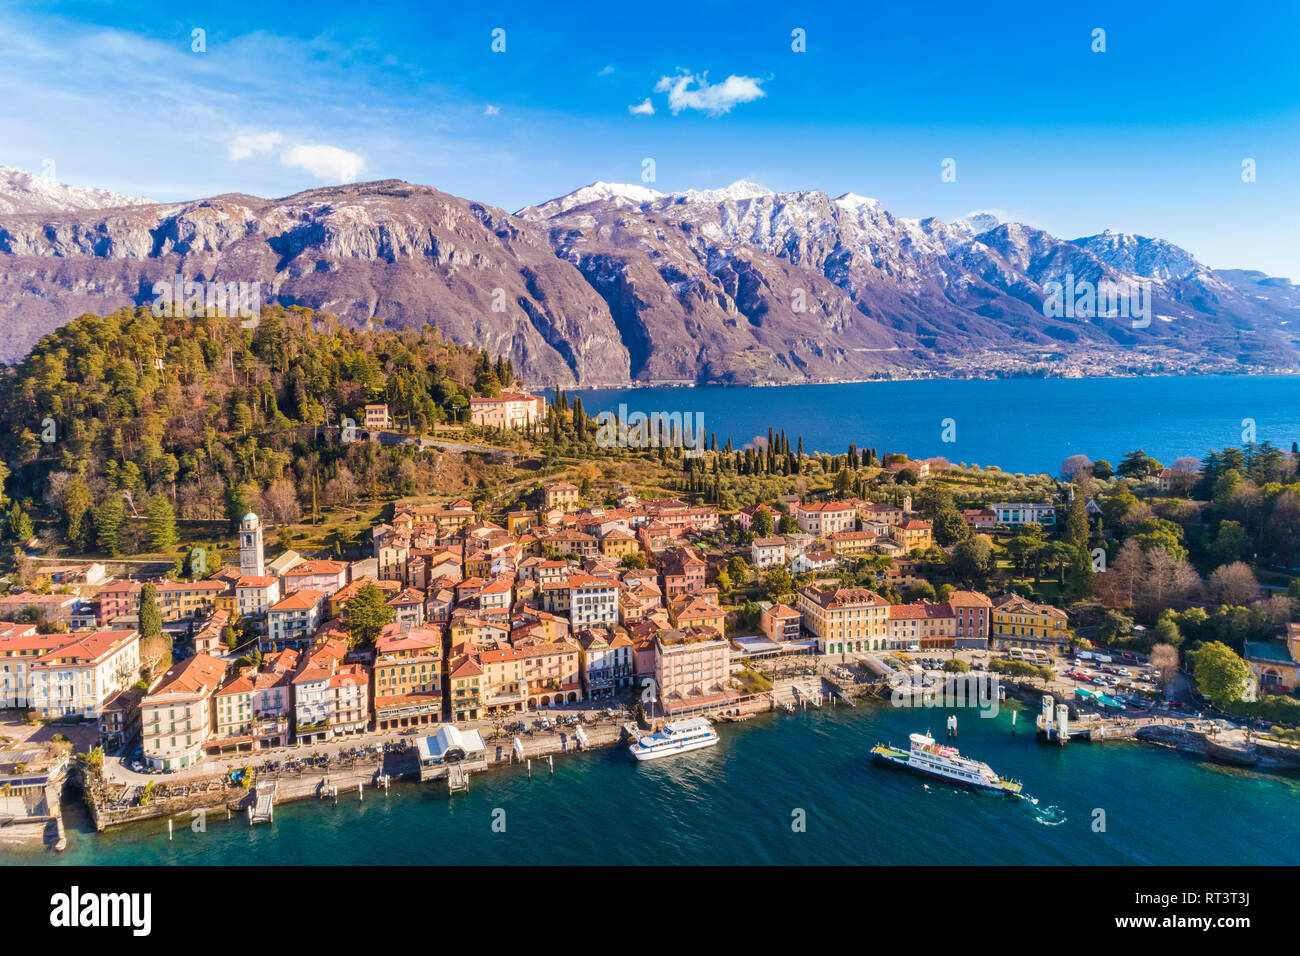 L'Italie, Lombardie, vue aérienne de Bellagio et le lac de Côme Banque D'Images